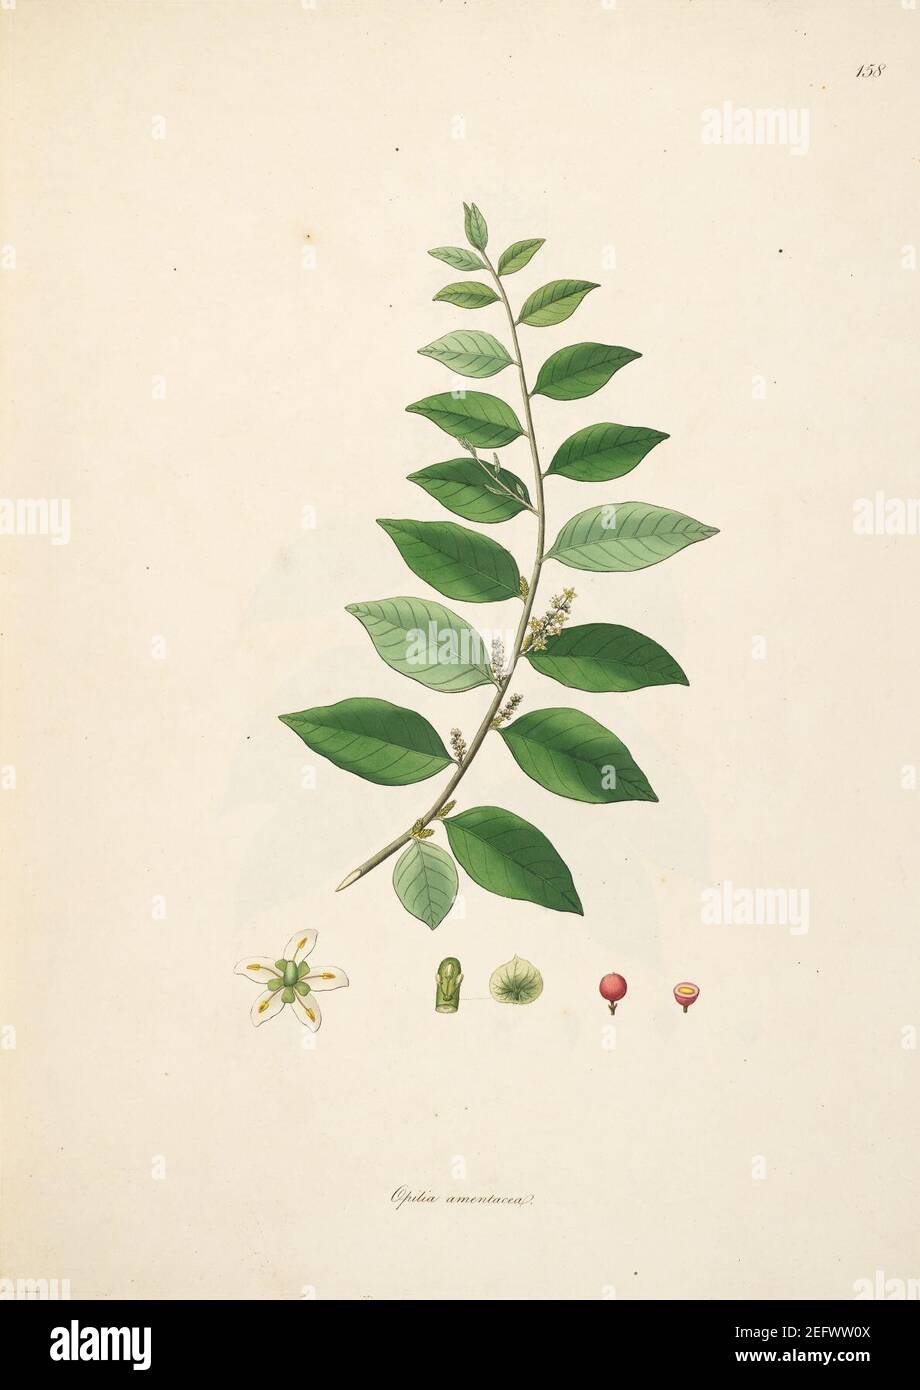 Opilia amentacea Roxburgh 1798 2-158. Stock Photo